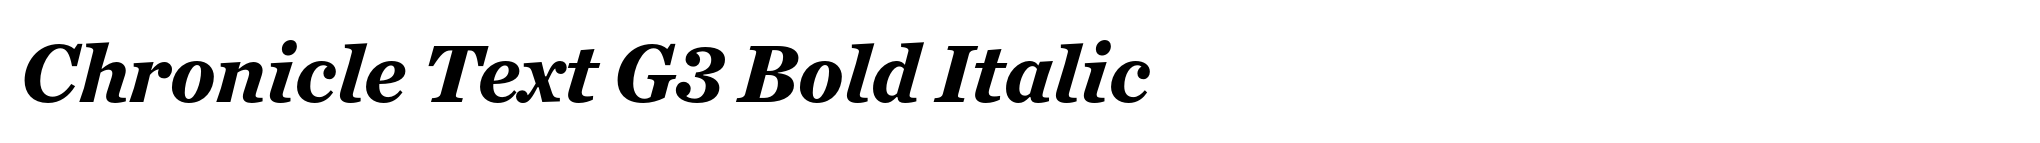 Chronicle Text G3 Bold Italic image